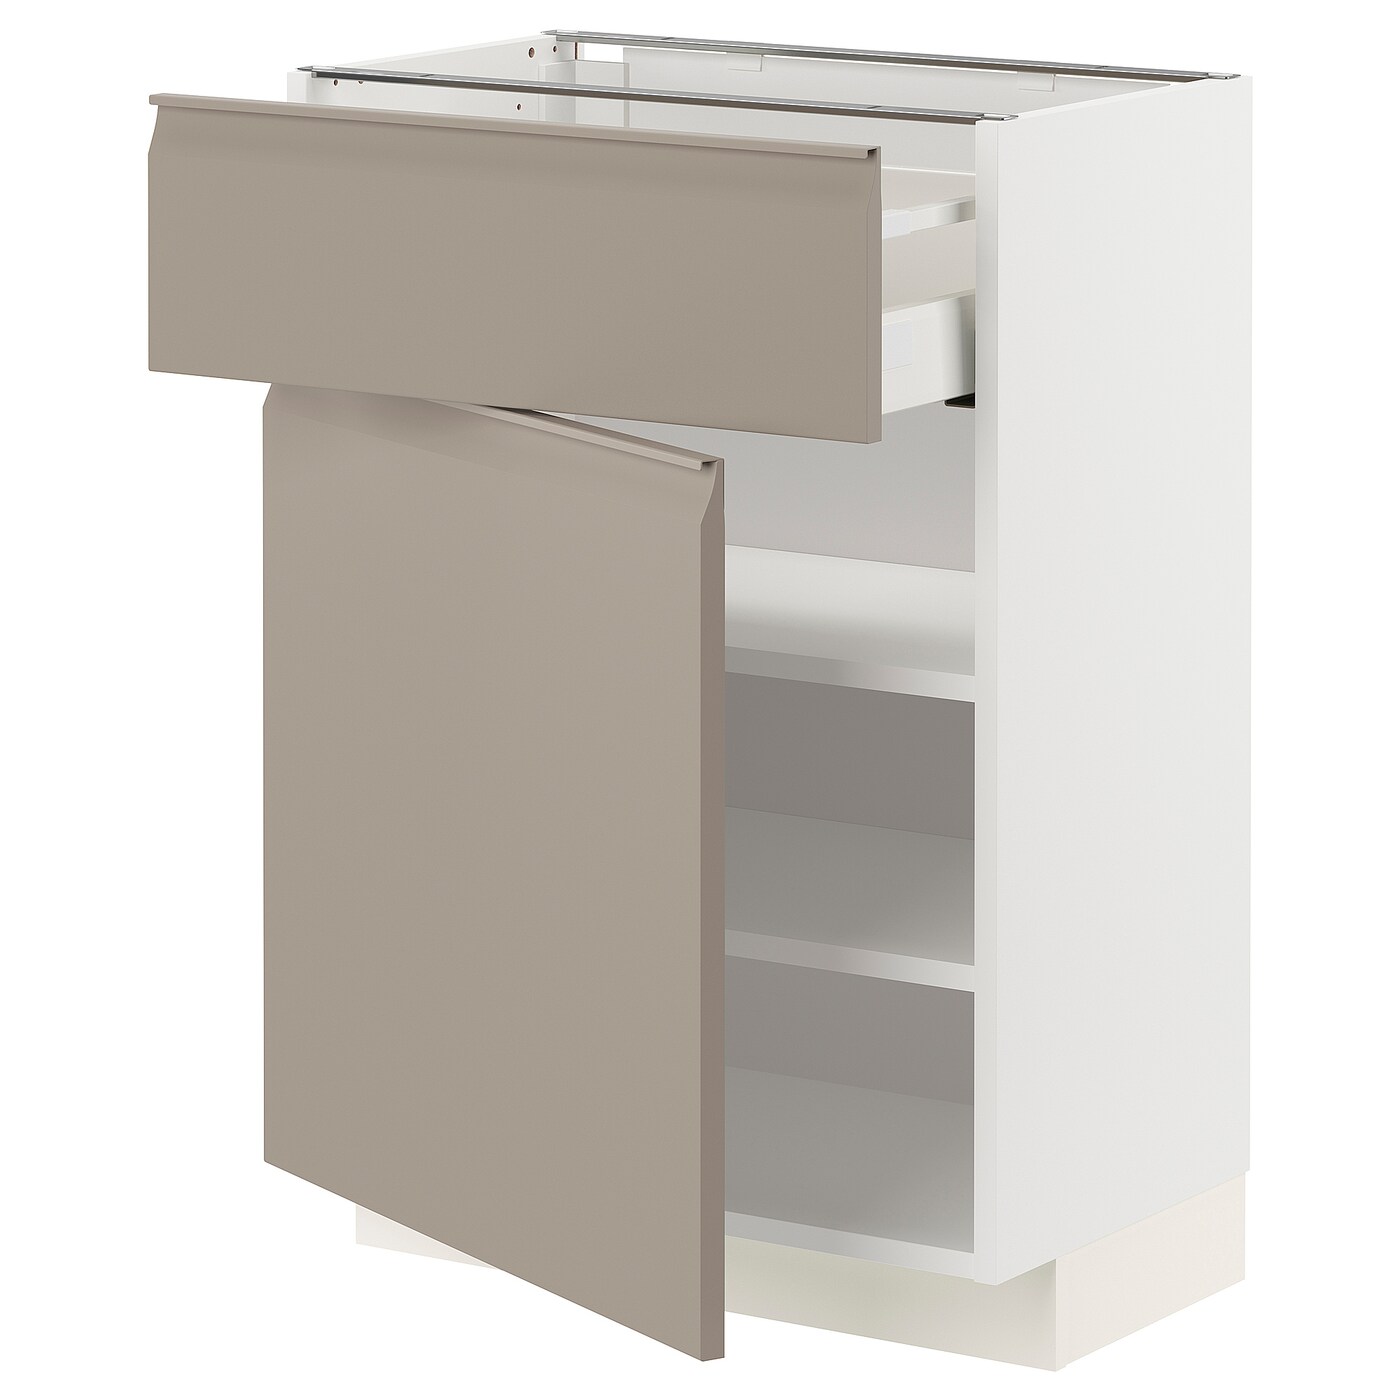 Напольный кухонный шкаф  - IKEA METOD MAXIMERA, 88x39x60см, белый/темно-бежевый, МЕТОД МАКСИМЕРА ИКЕА